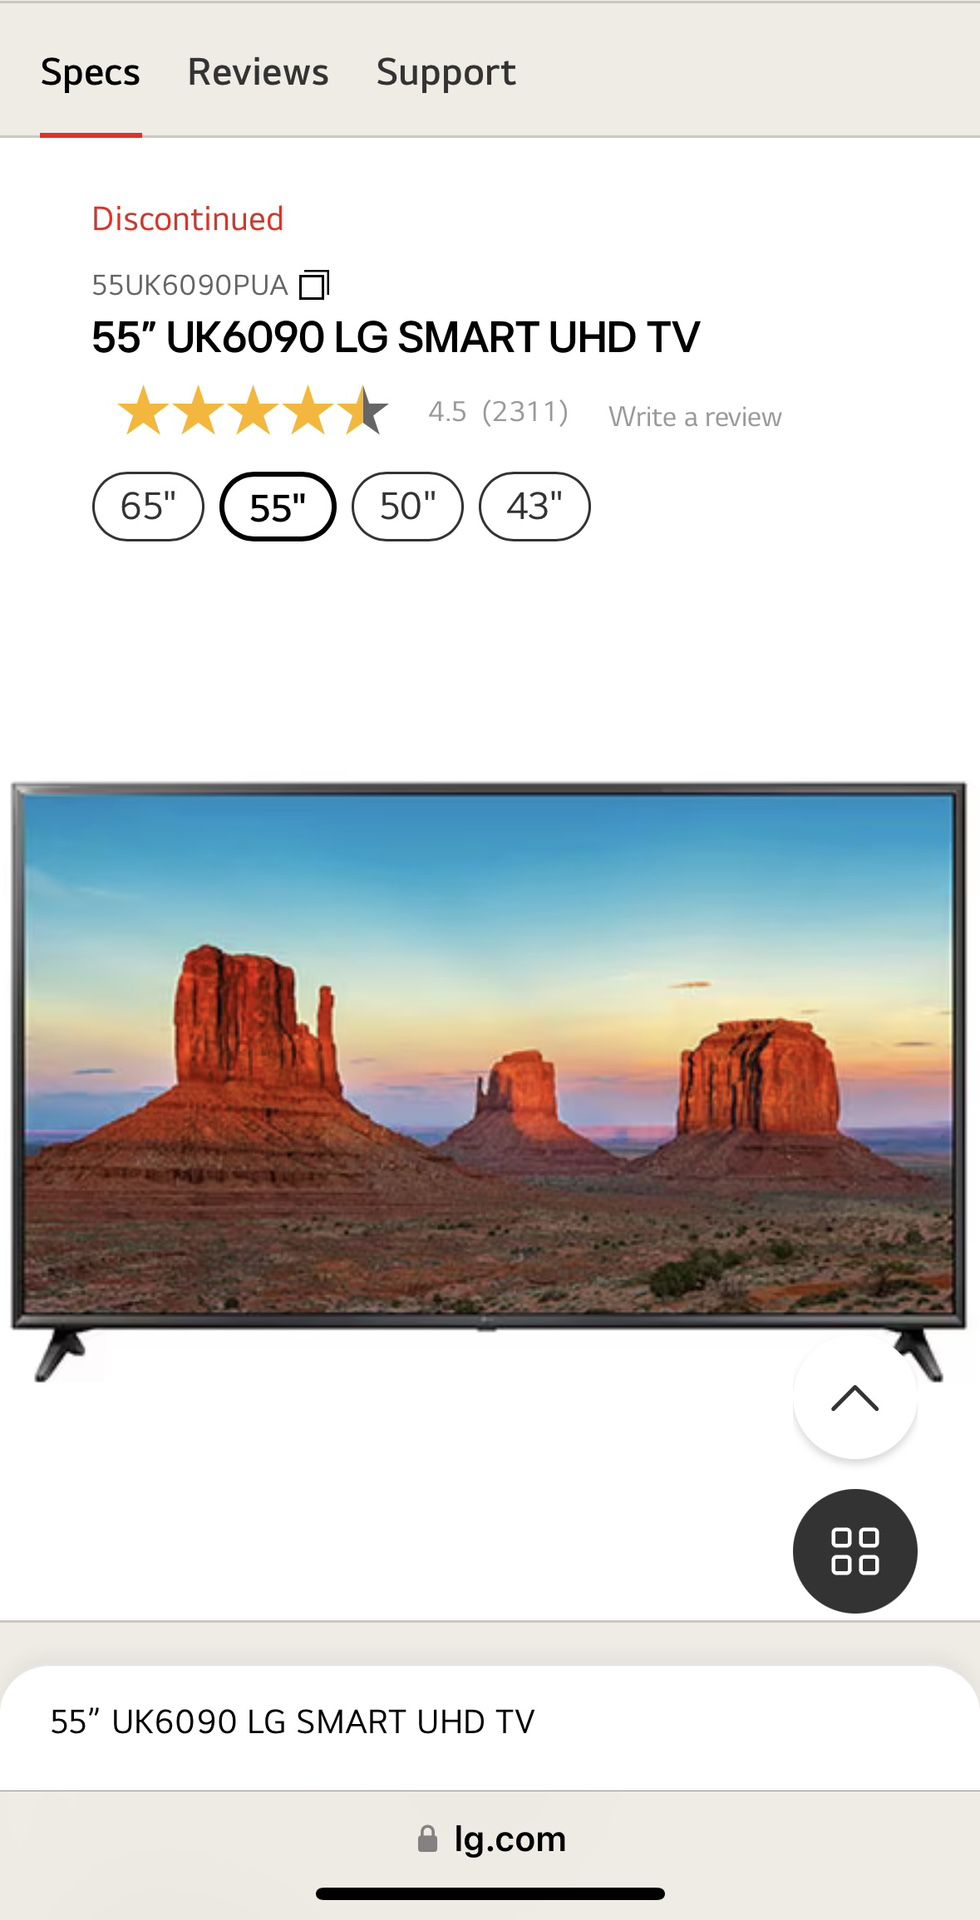  LG - 55” UK6090 SMART UHD TV